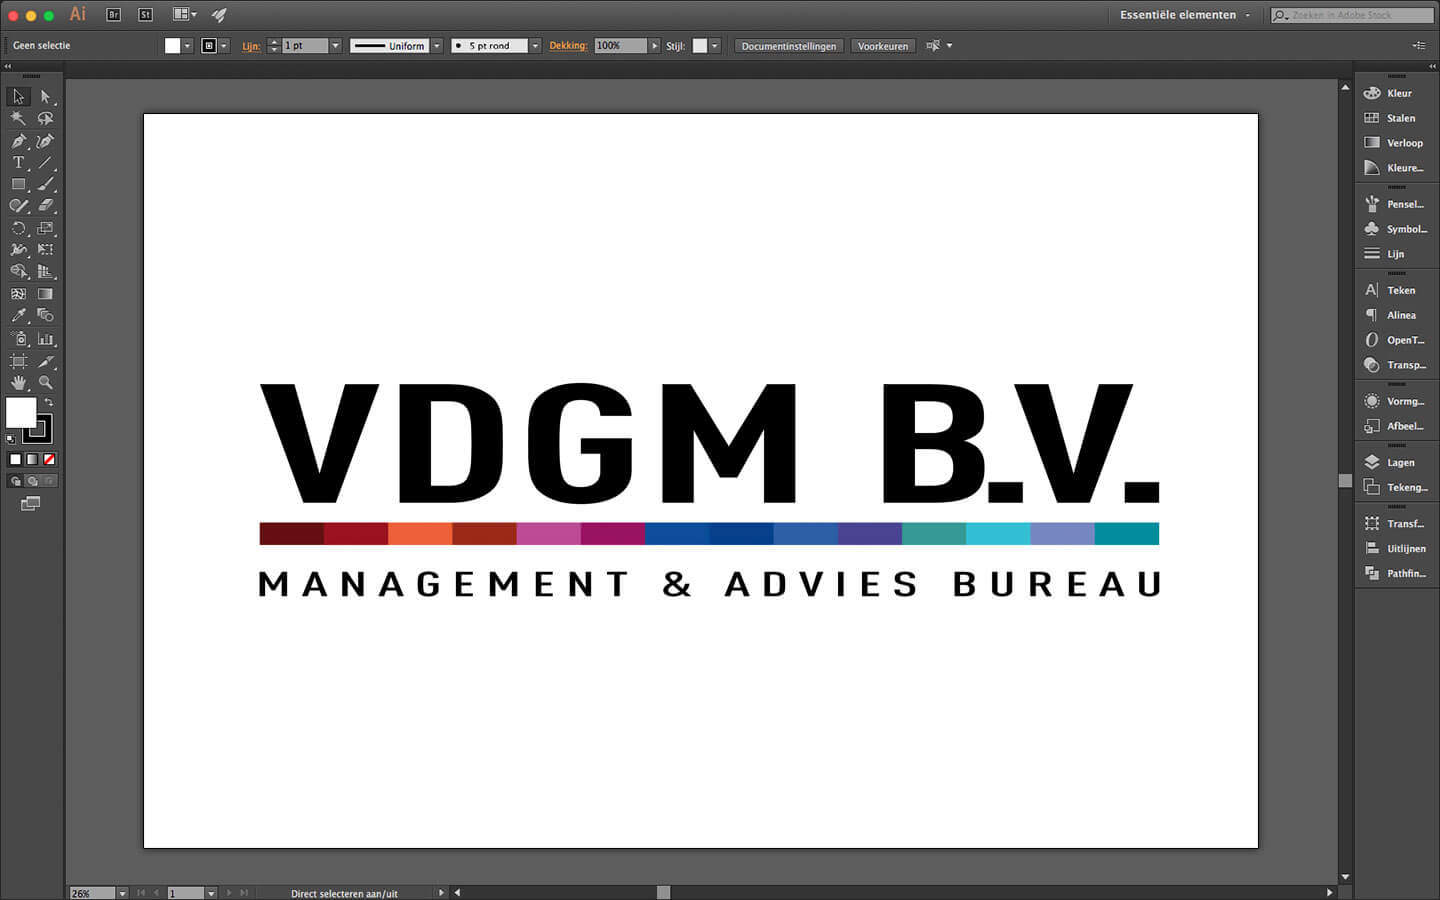 Logo ontwerp voor adviesbureau VDGM